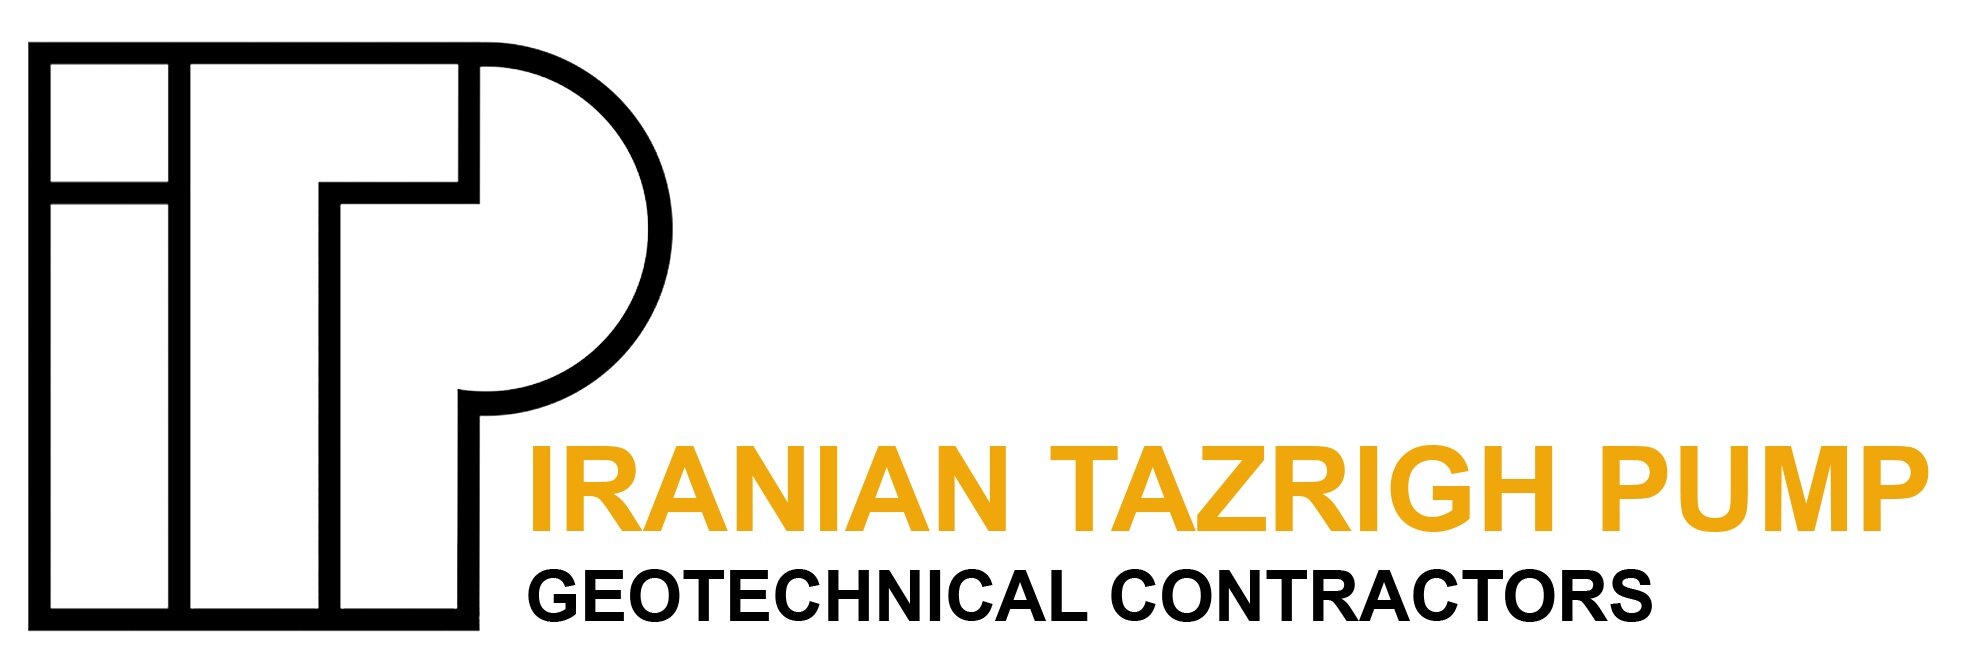 Iranian Tazrigh Pump - ایرانیان تزریق پمپ